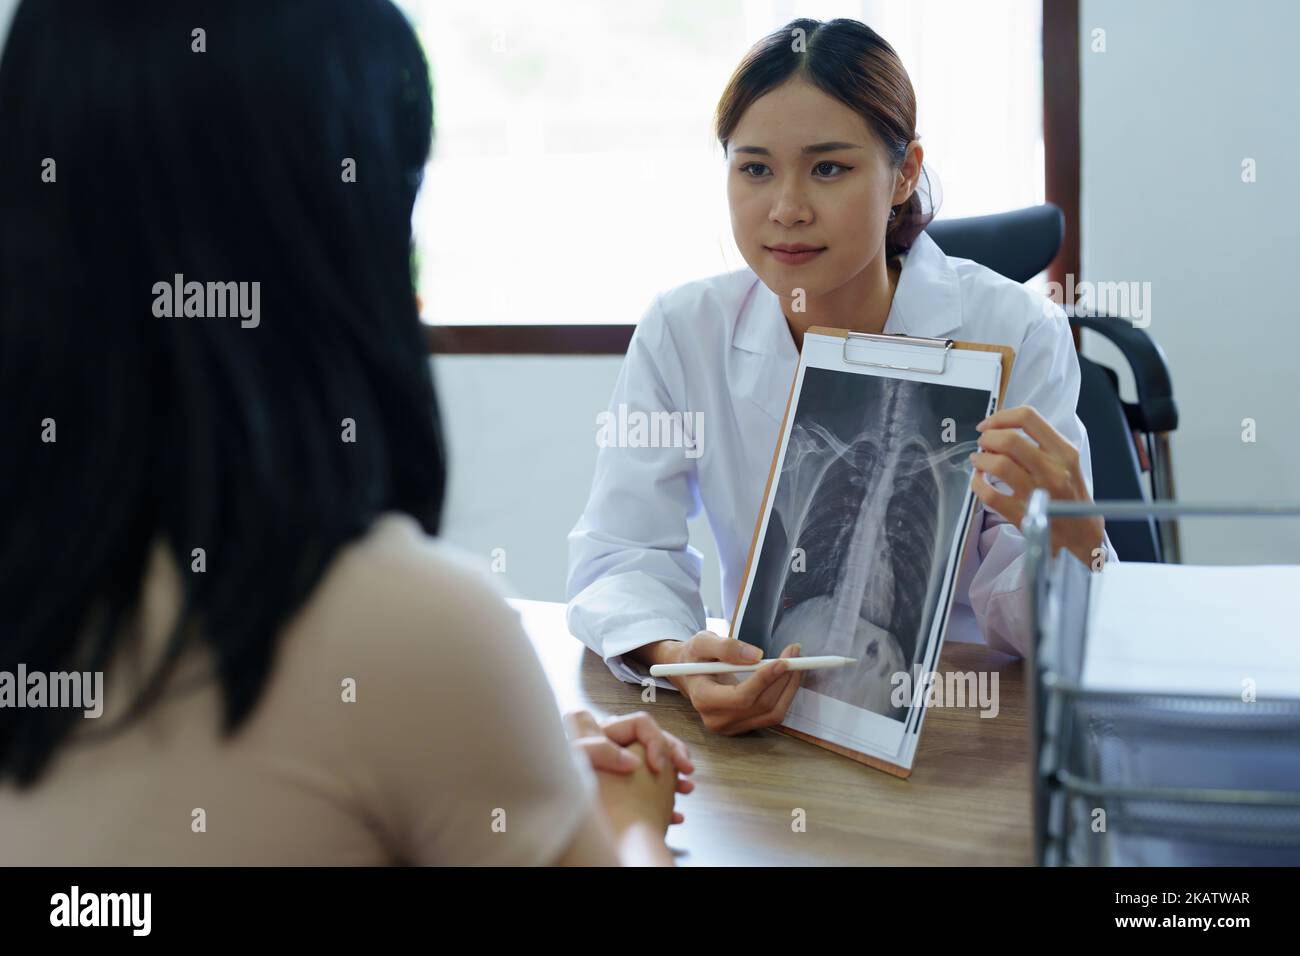 Une femme asiatique signale un film radiographique pour expliquer le processus de traitement du patient Banque D'Images